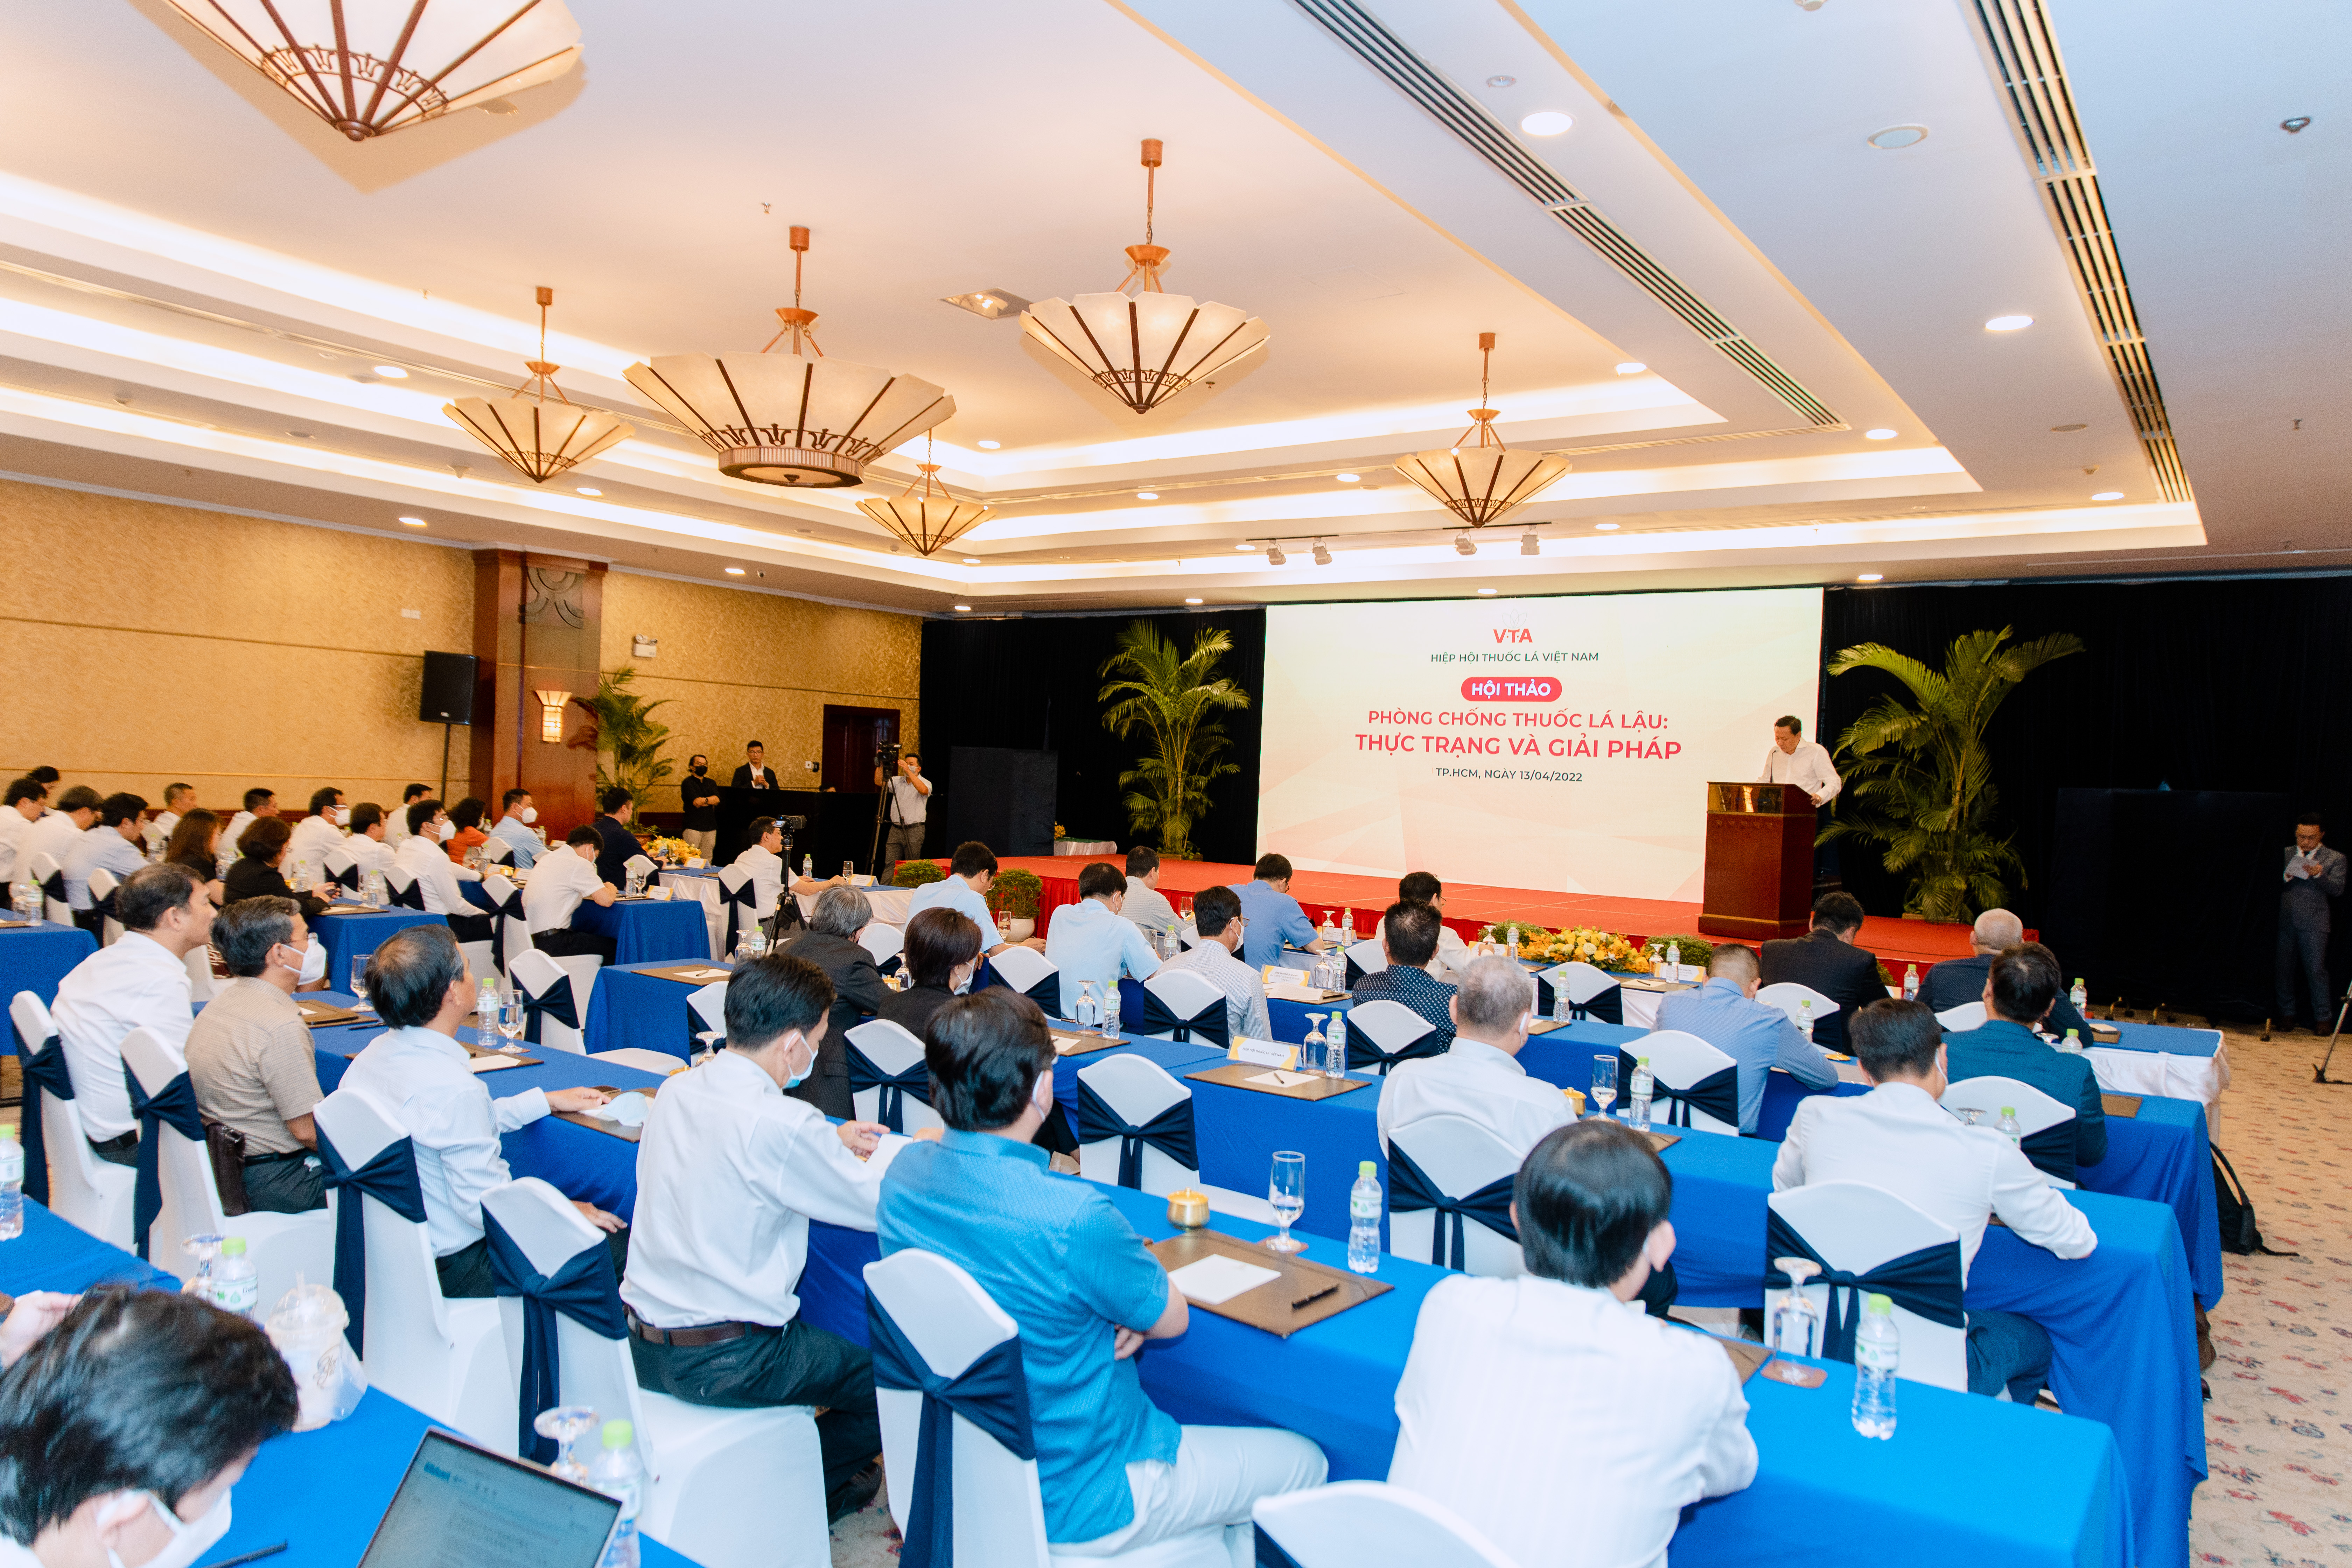 Hiệp hội thuốc lá Việt Nam vừa phối hợp với các cơ quan chức năng tổ chức hội thảo bàn giải pháp chống buôn lậu thuốc lá